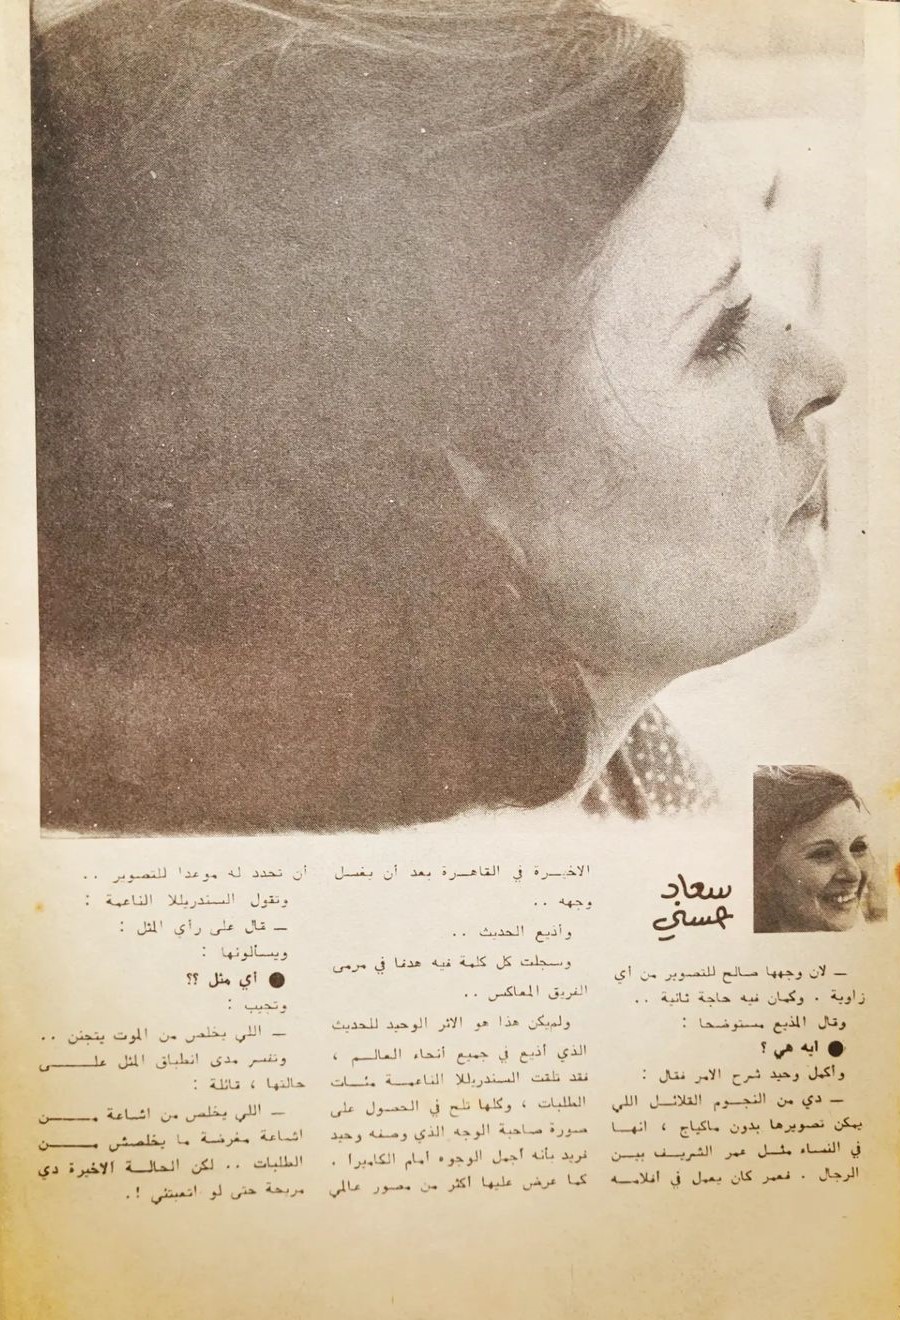 1976 - مقال صحفي : أي سر يبحث عنه المصورون .. في وجه سعاد حسني 1976 م 447